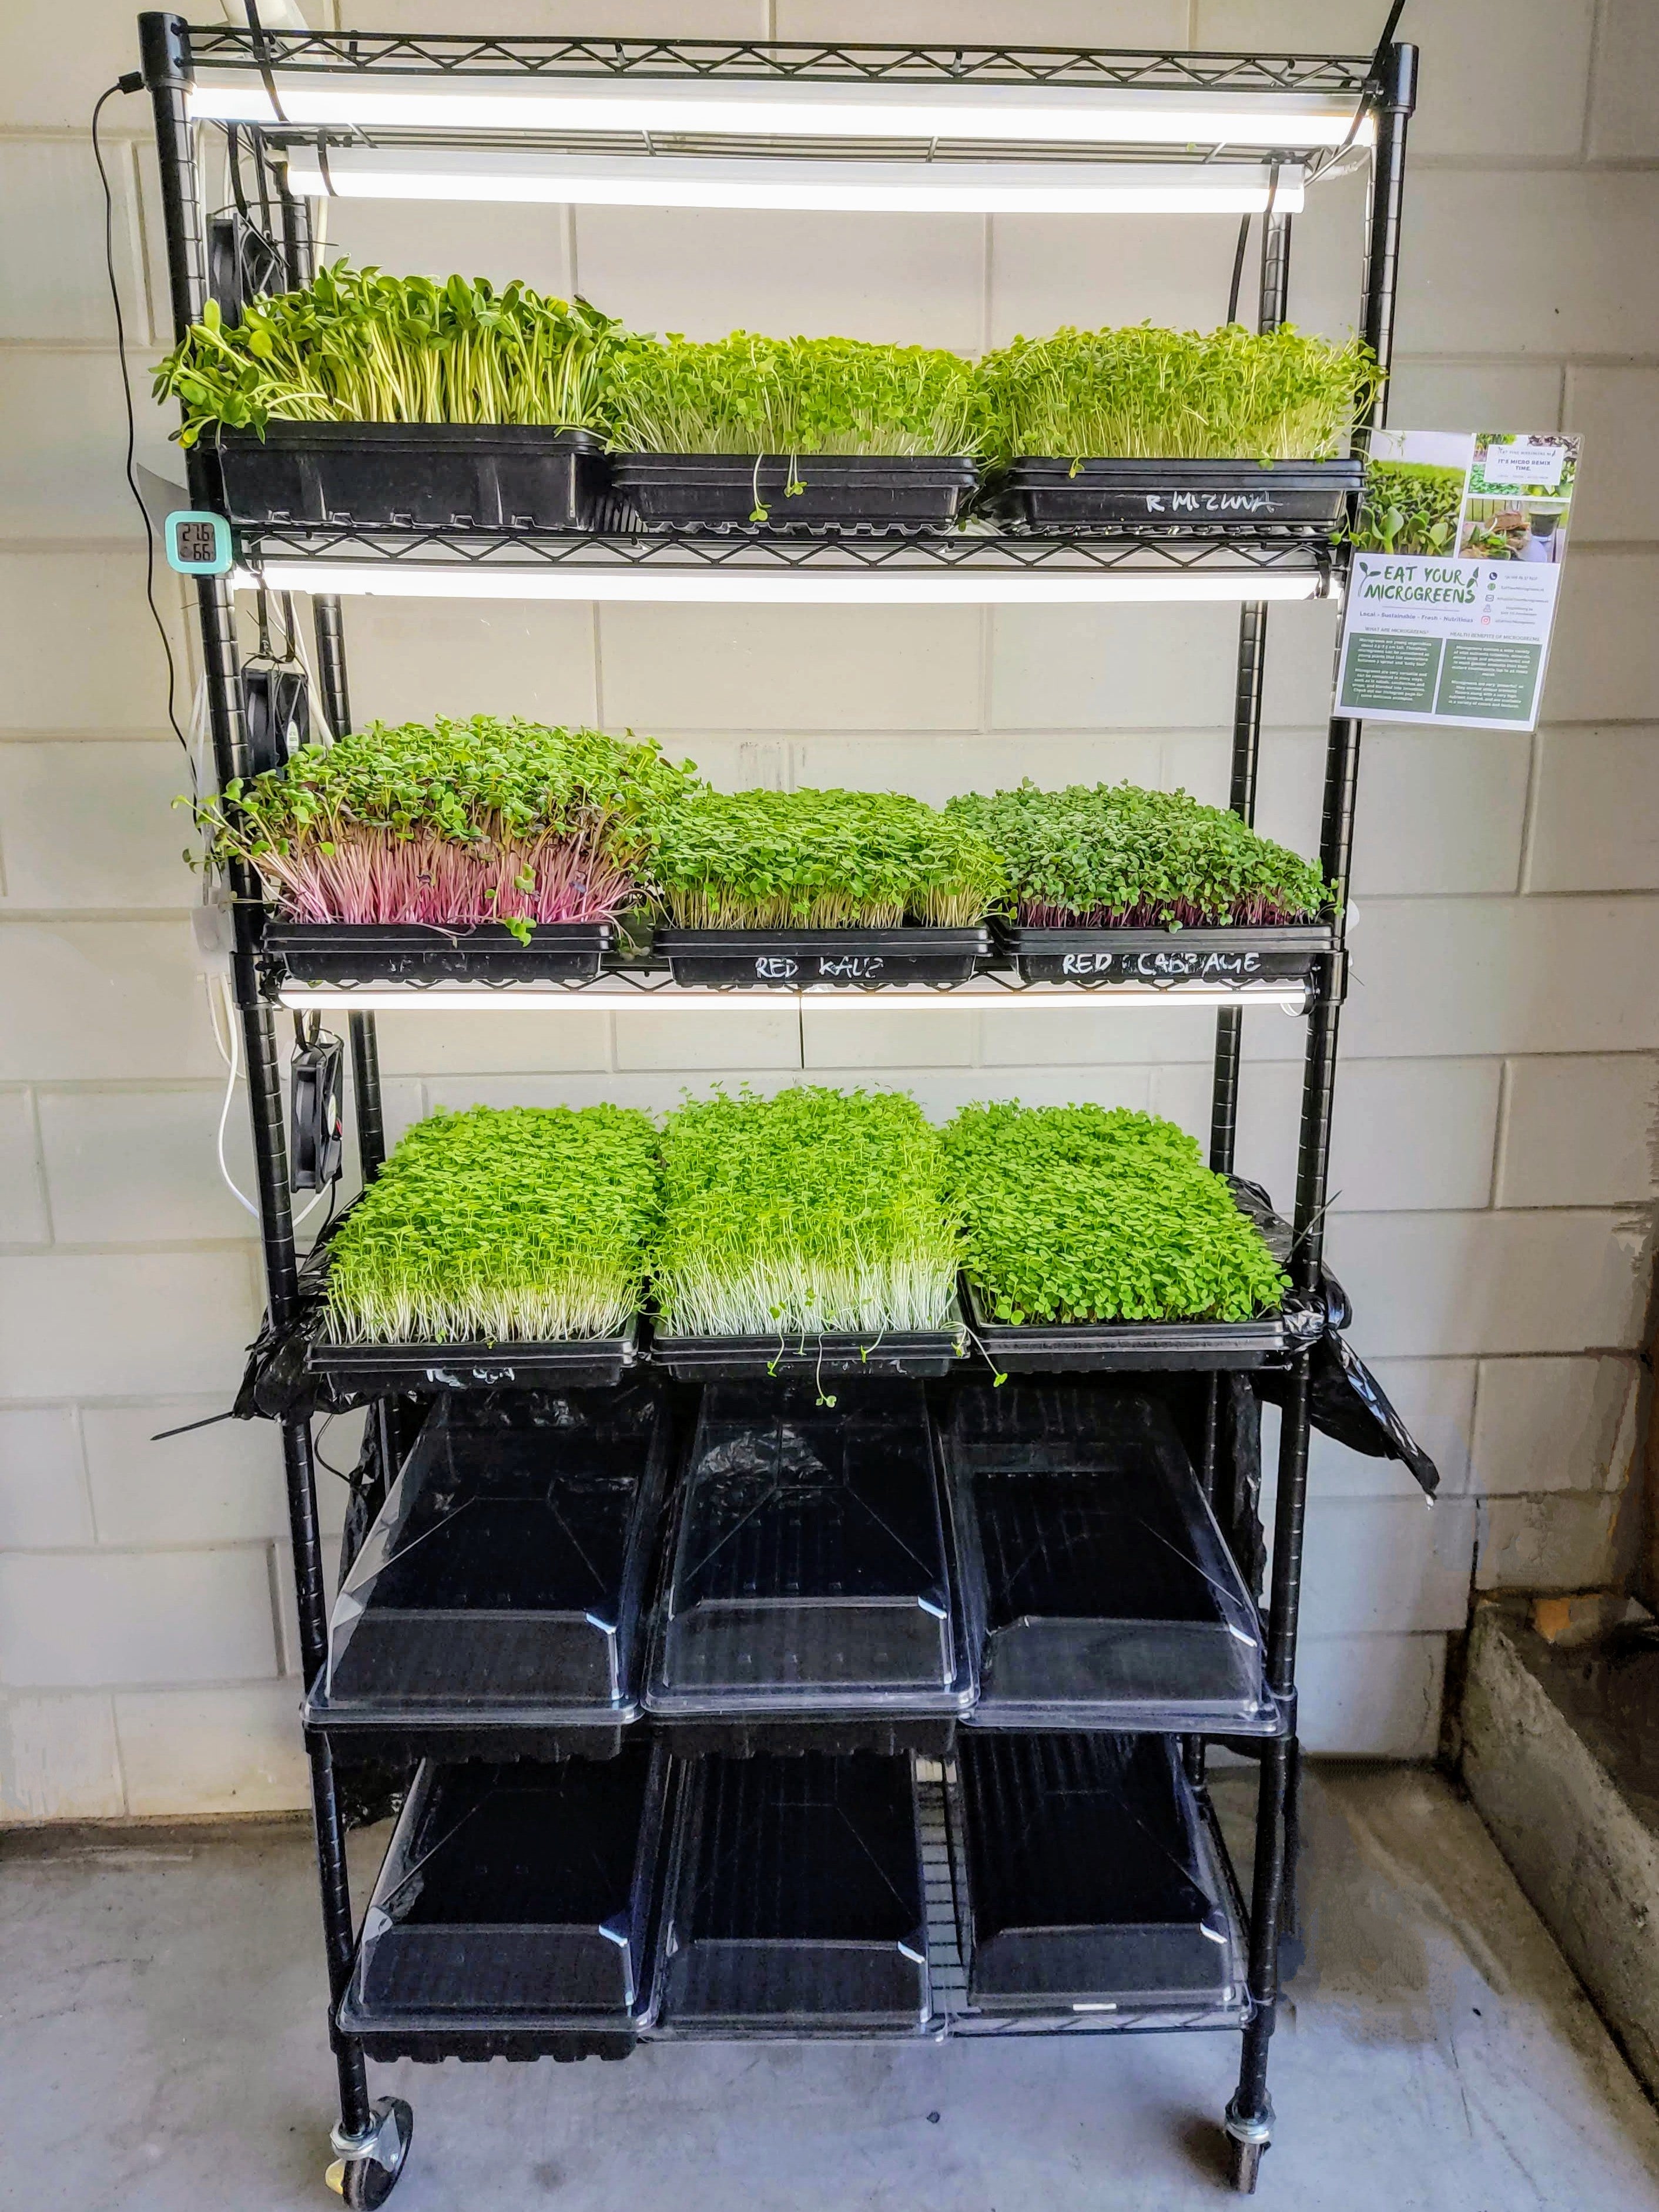 Microgreen Integrated Farm - Verbouw meer dan 10 kg voedsel - Geef uzelf, uw gezin en de gemeenschap meer macht